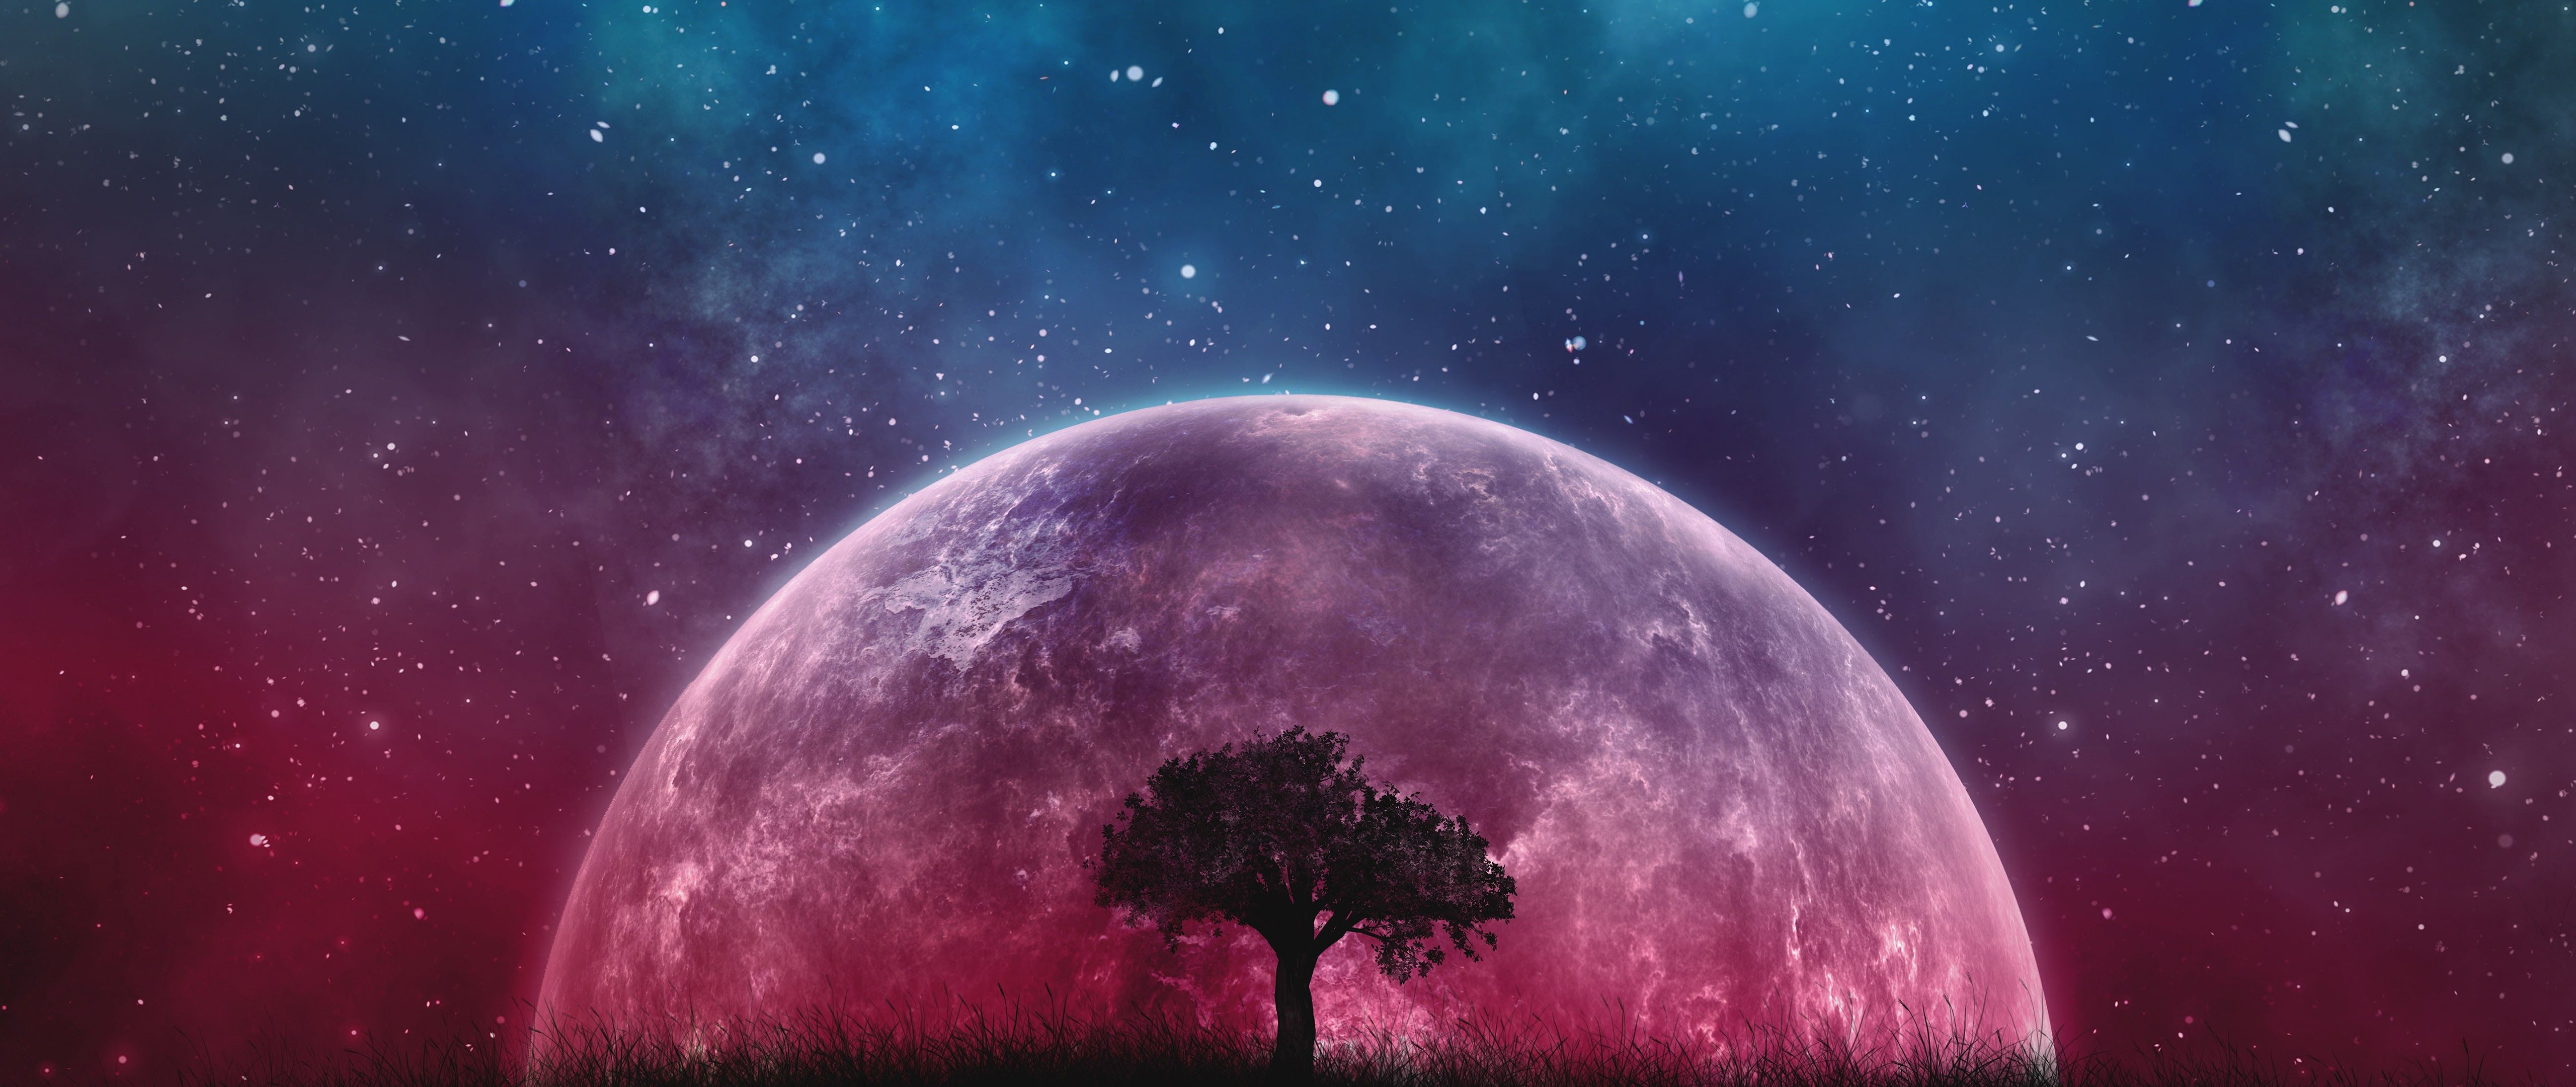 Moon Night Sky Stars Landscape Scenery 8K Wallpaper